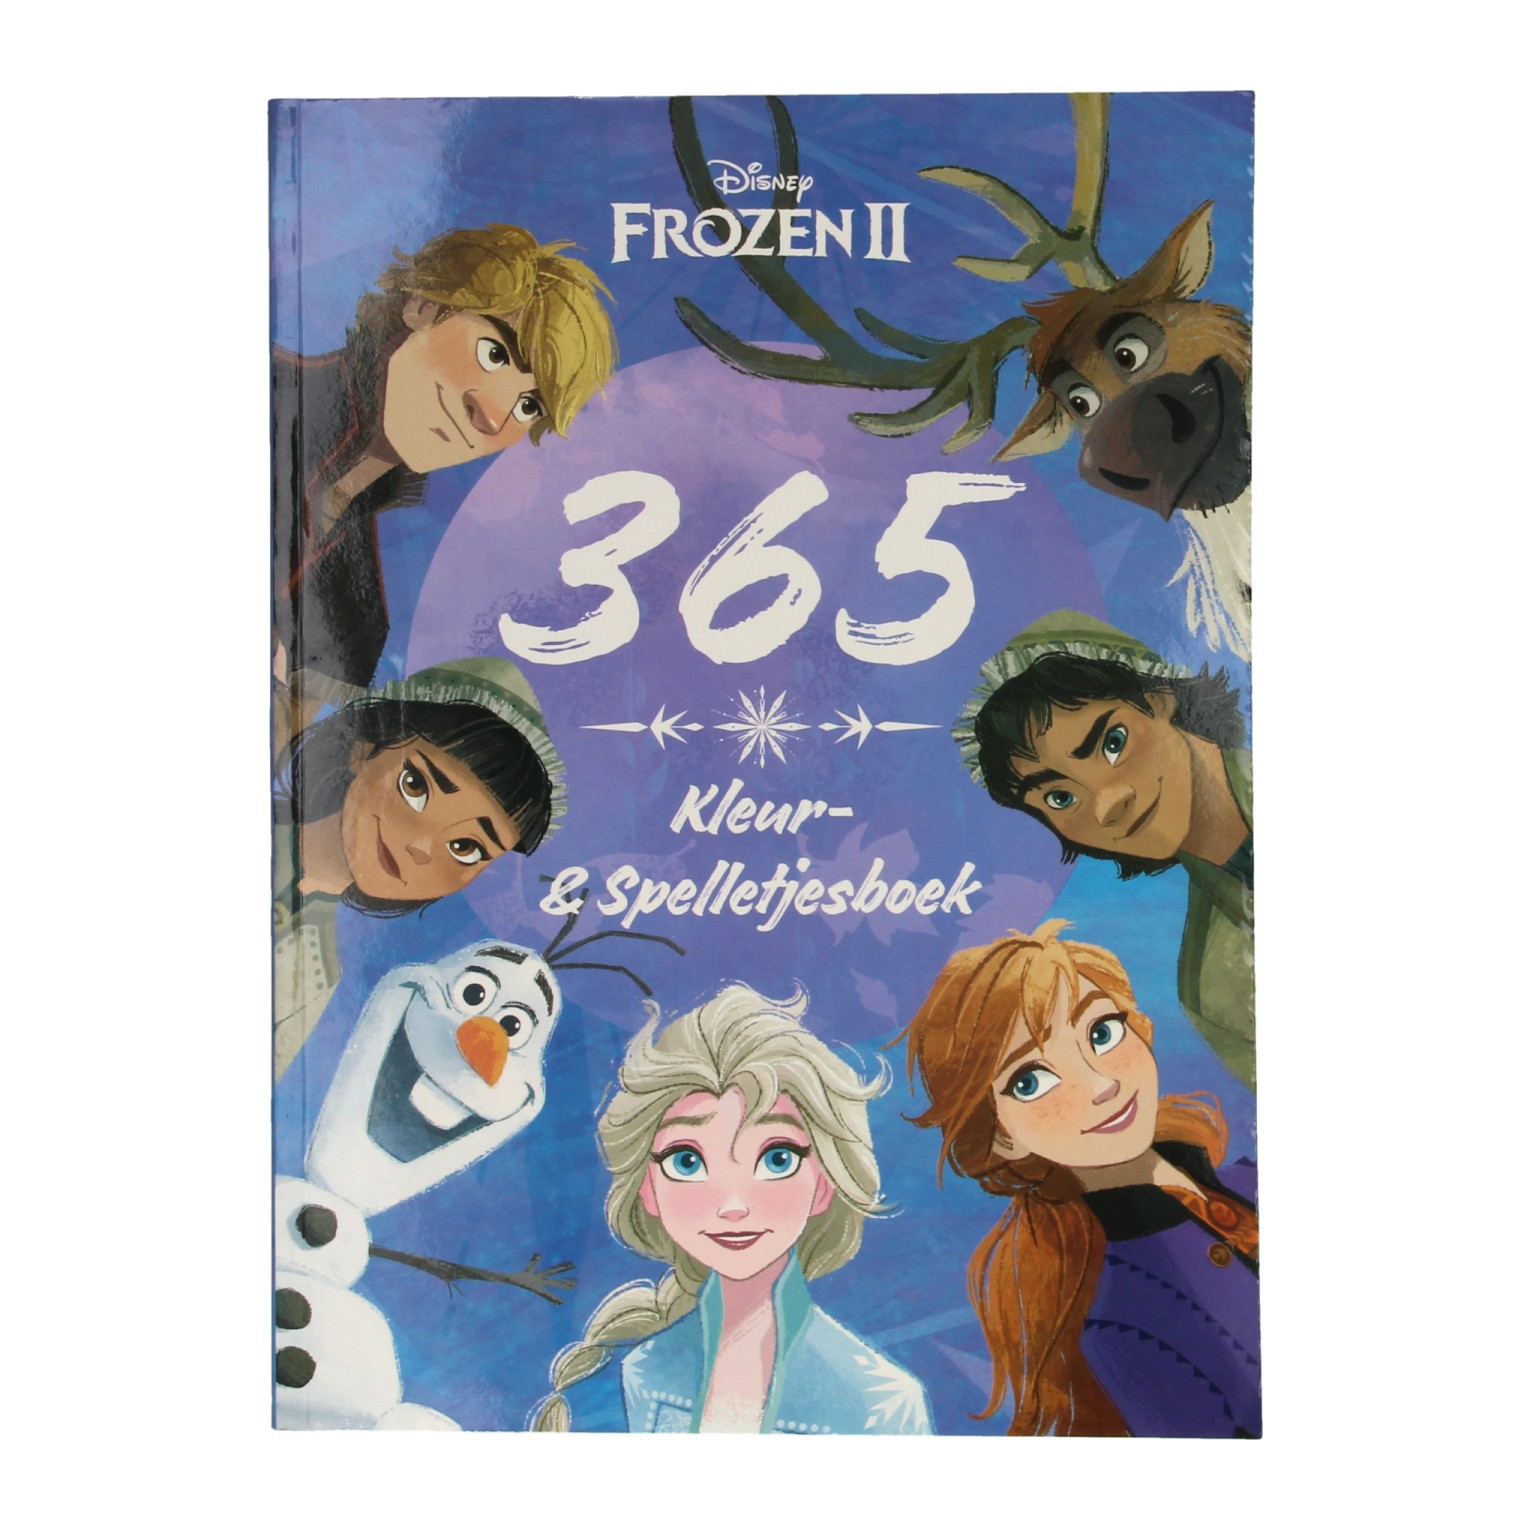 Acheter Livre de jeux Disney 365 La Reine des Neiges en ligne?